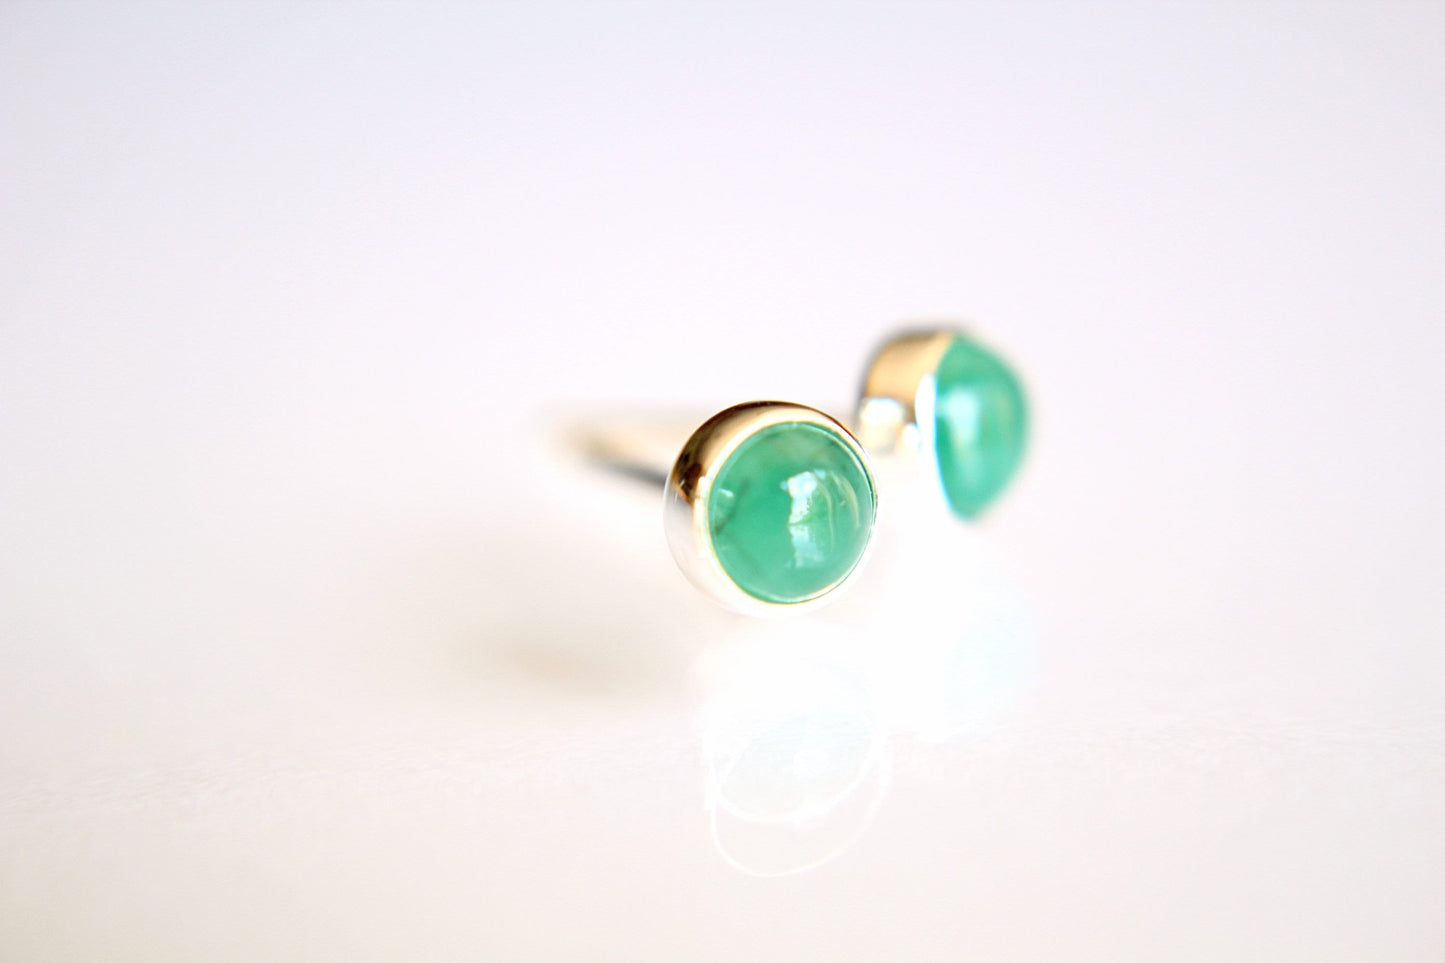 Emerald Earrings, Gemstone Earrings, Sterling Earrings, Post Earrings, Green Post Earrings, Small Earrings, Minimalist Earrings, Gift